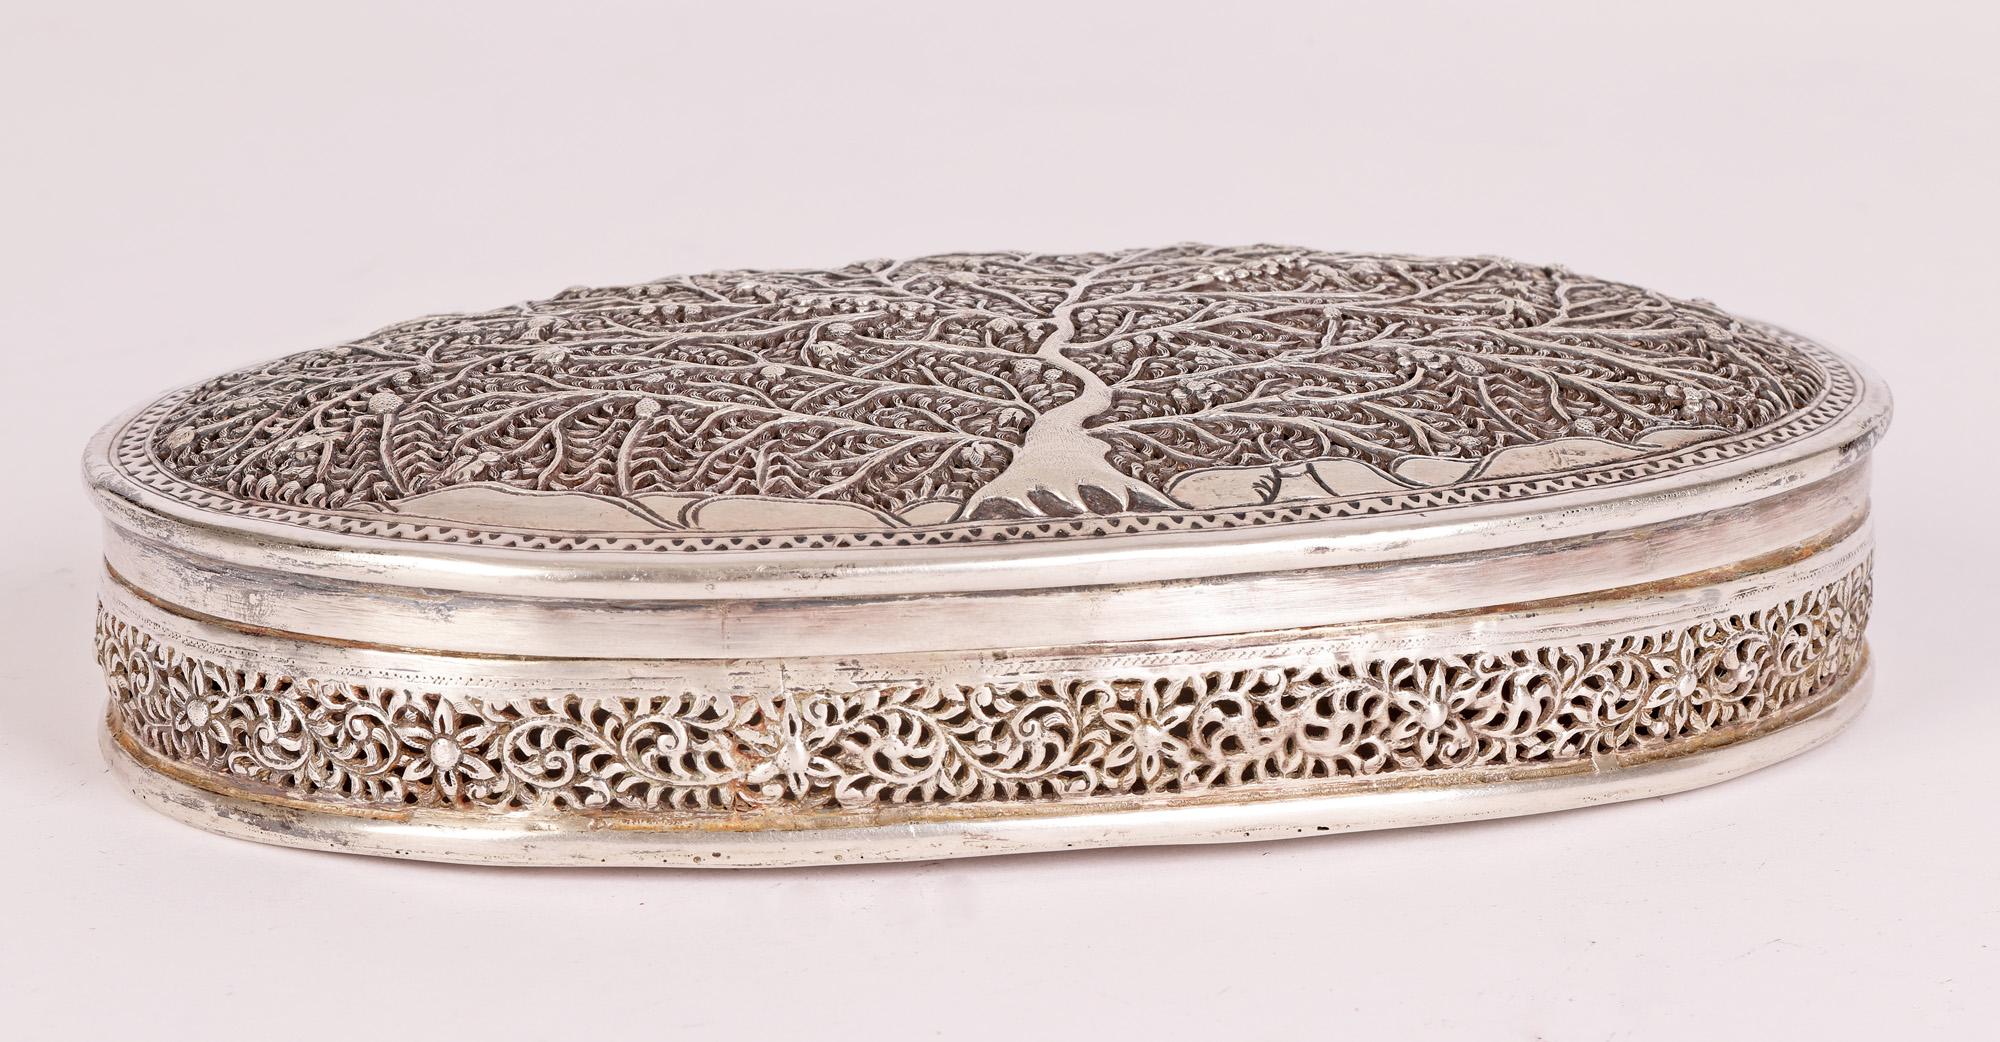 Une boîte ovale inhabituelle et très fine en argent birman ancien, dont le couvercle est décoré d'un arbre de vie, datant probablement du début du 20e siècle. La boîte est de forme ovale et plate, avec un couvercle et des côtés finement percés, et